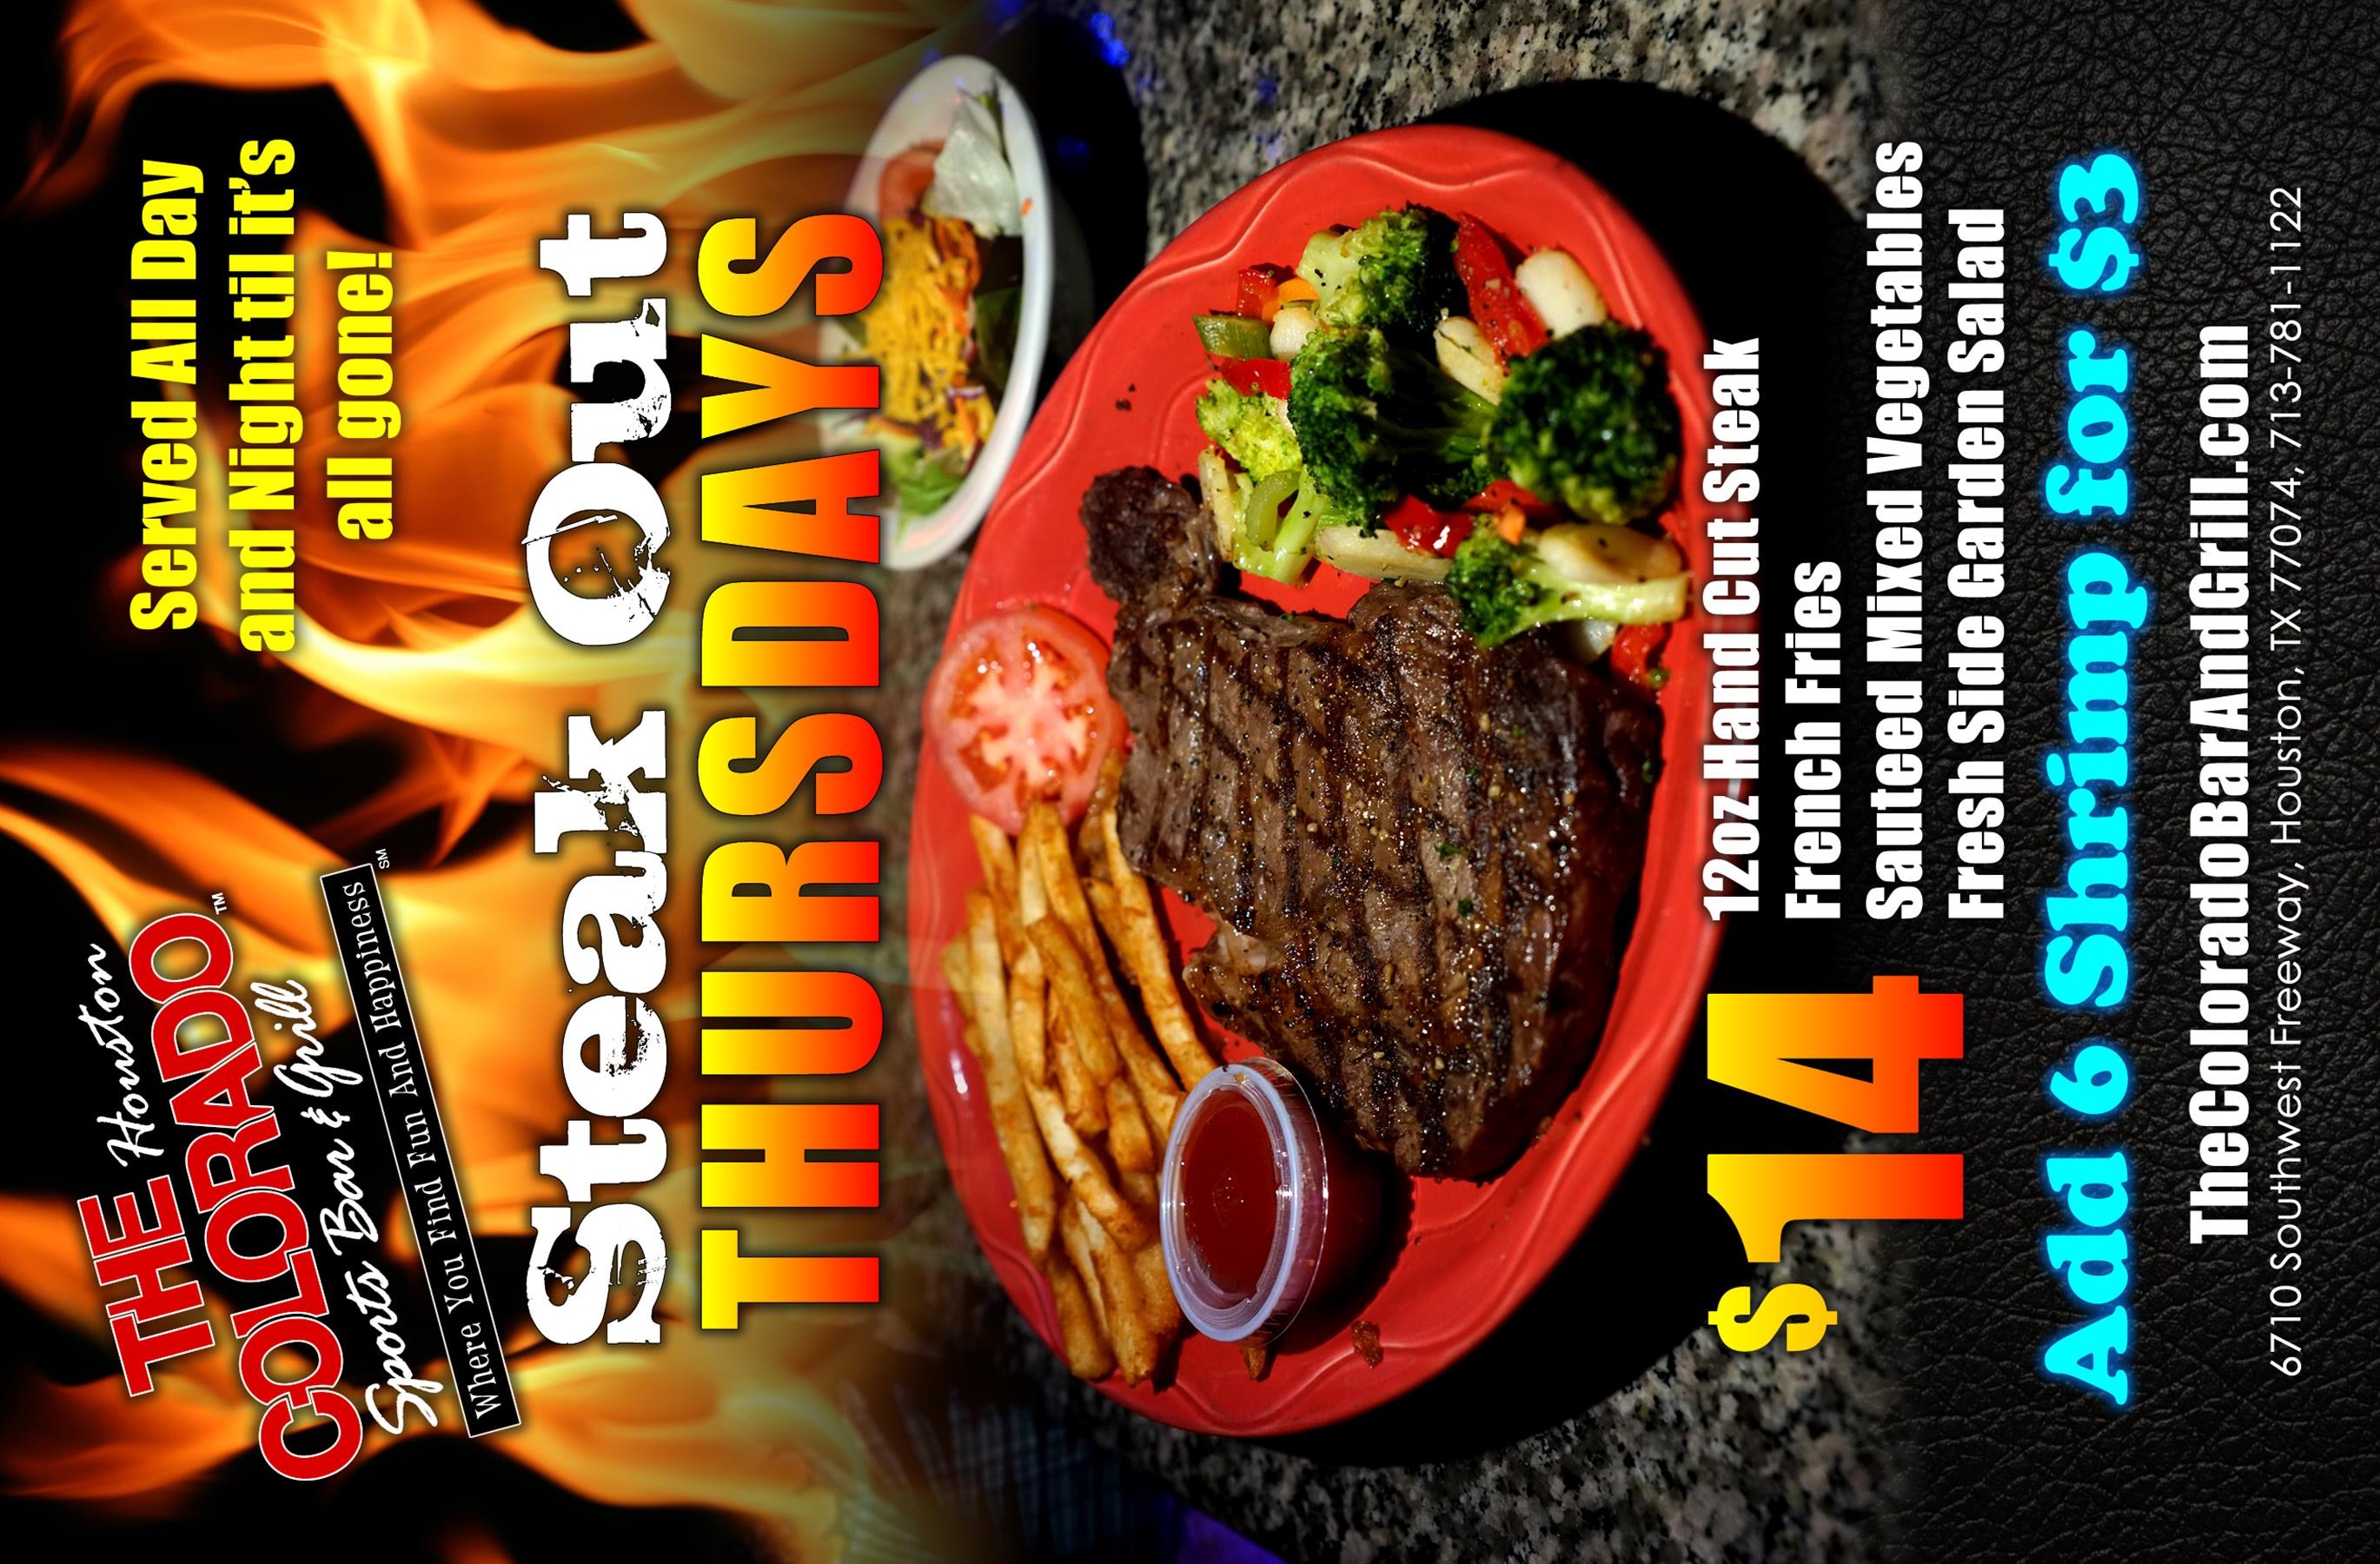 Steak out Thursdays